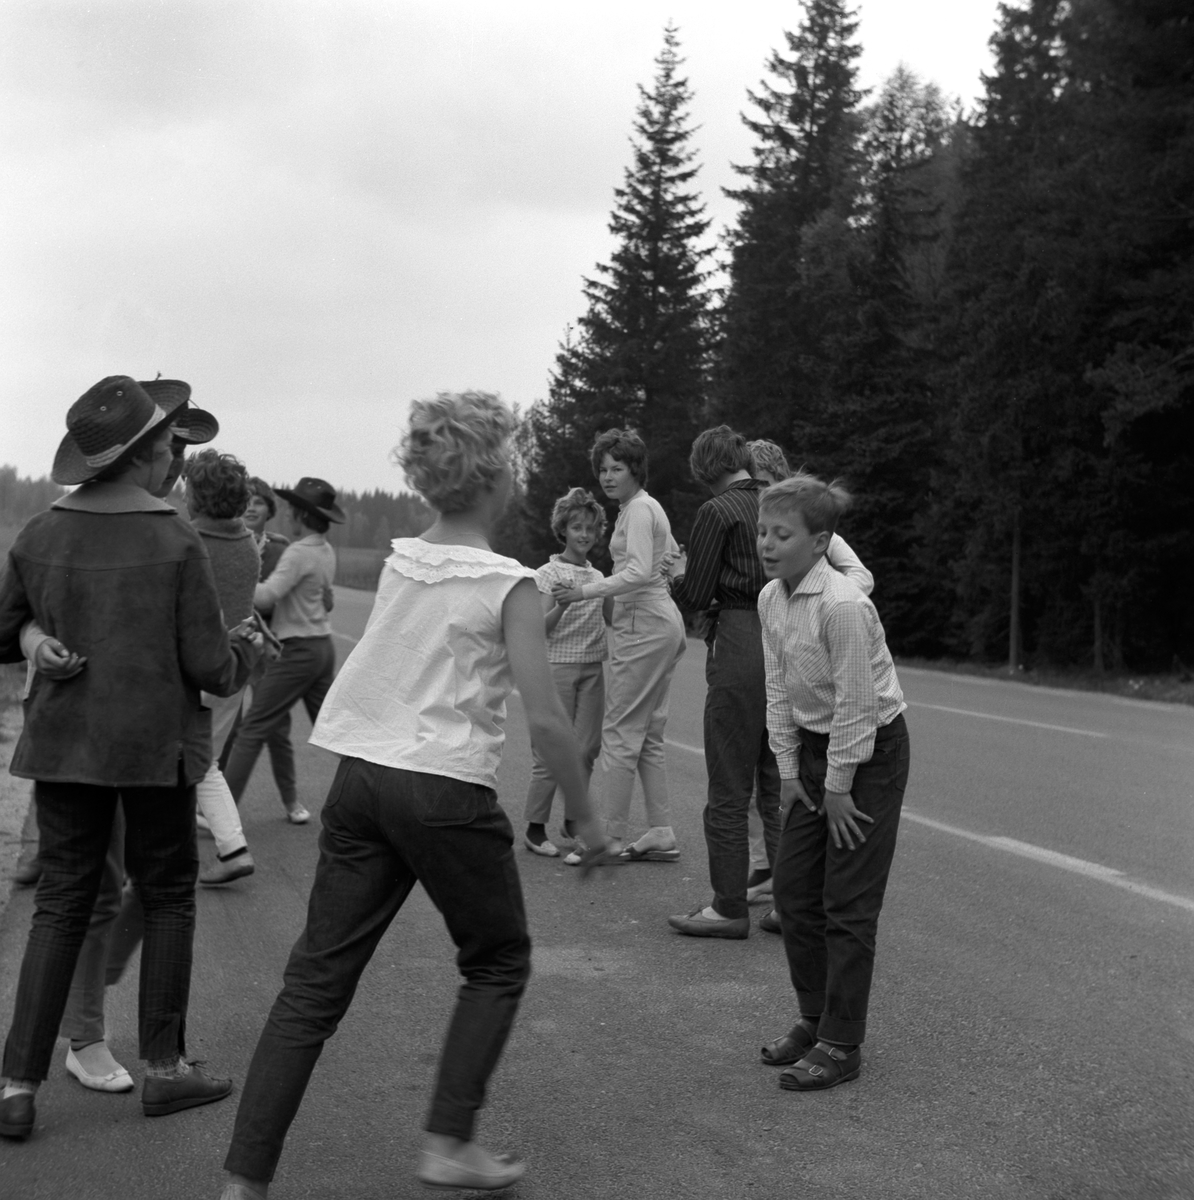 År 1961 på våren är klass 6 från Österängsskolan i Jönköping på skolresa i Småland tillsammans med sin lärare Göte Ohlsson. Här på väg till Lindhammars glasbruk. Efter att ha suttit stilla i bussen behöver man röra på sig, så det blir en liten danspaus på en rastplats.
På Österängsskolan var det tradition att man i 4:an åkte till Vadstena och Omberg, i 5:an till Västergötland (Falbygden, Skara, Varnhem) och i 6:an en resa till glasbruk i Småland.